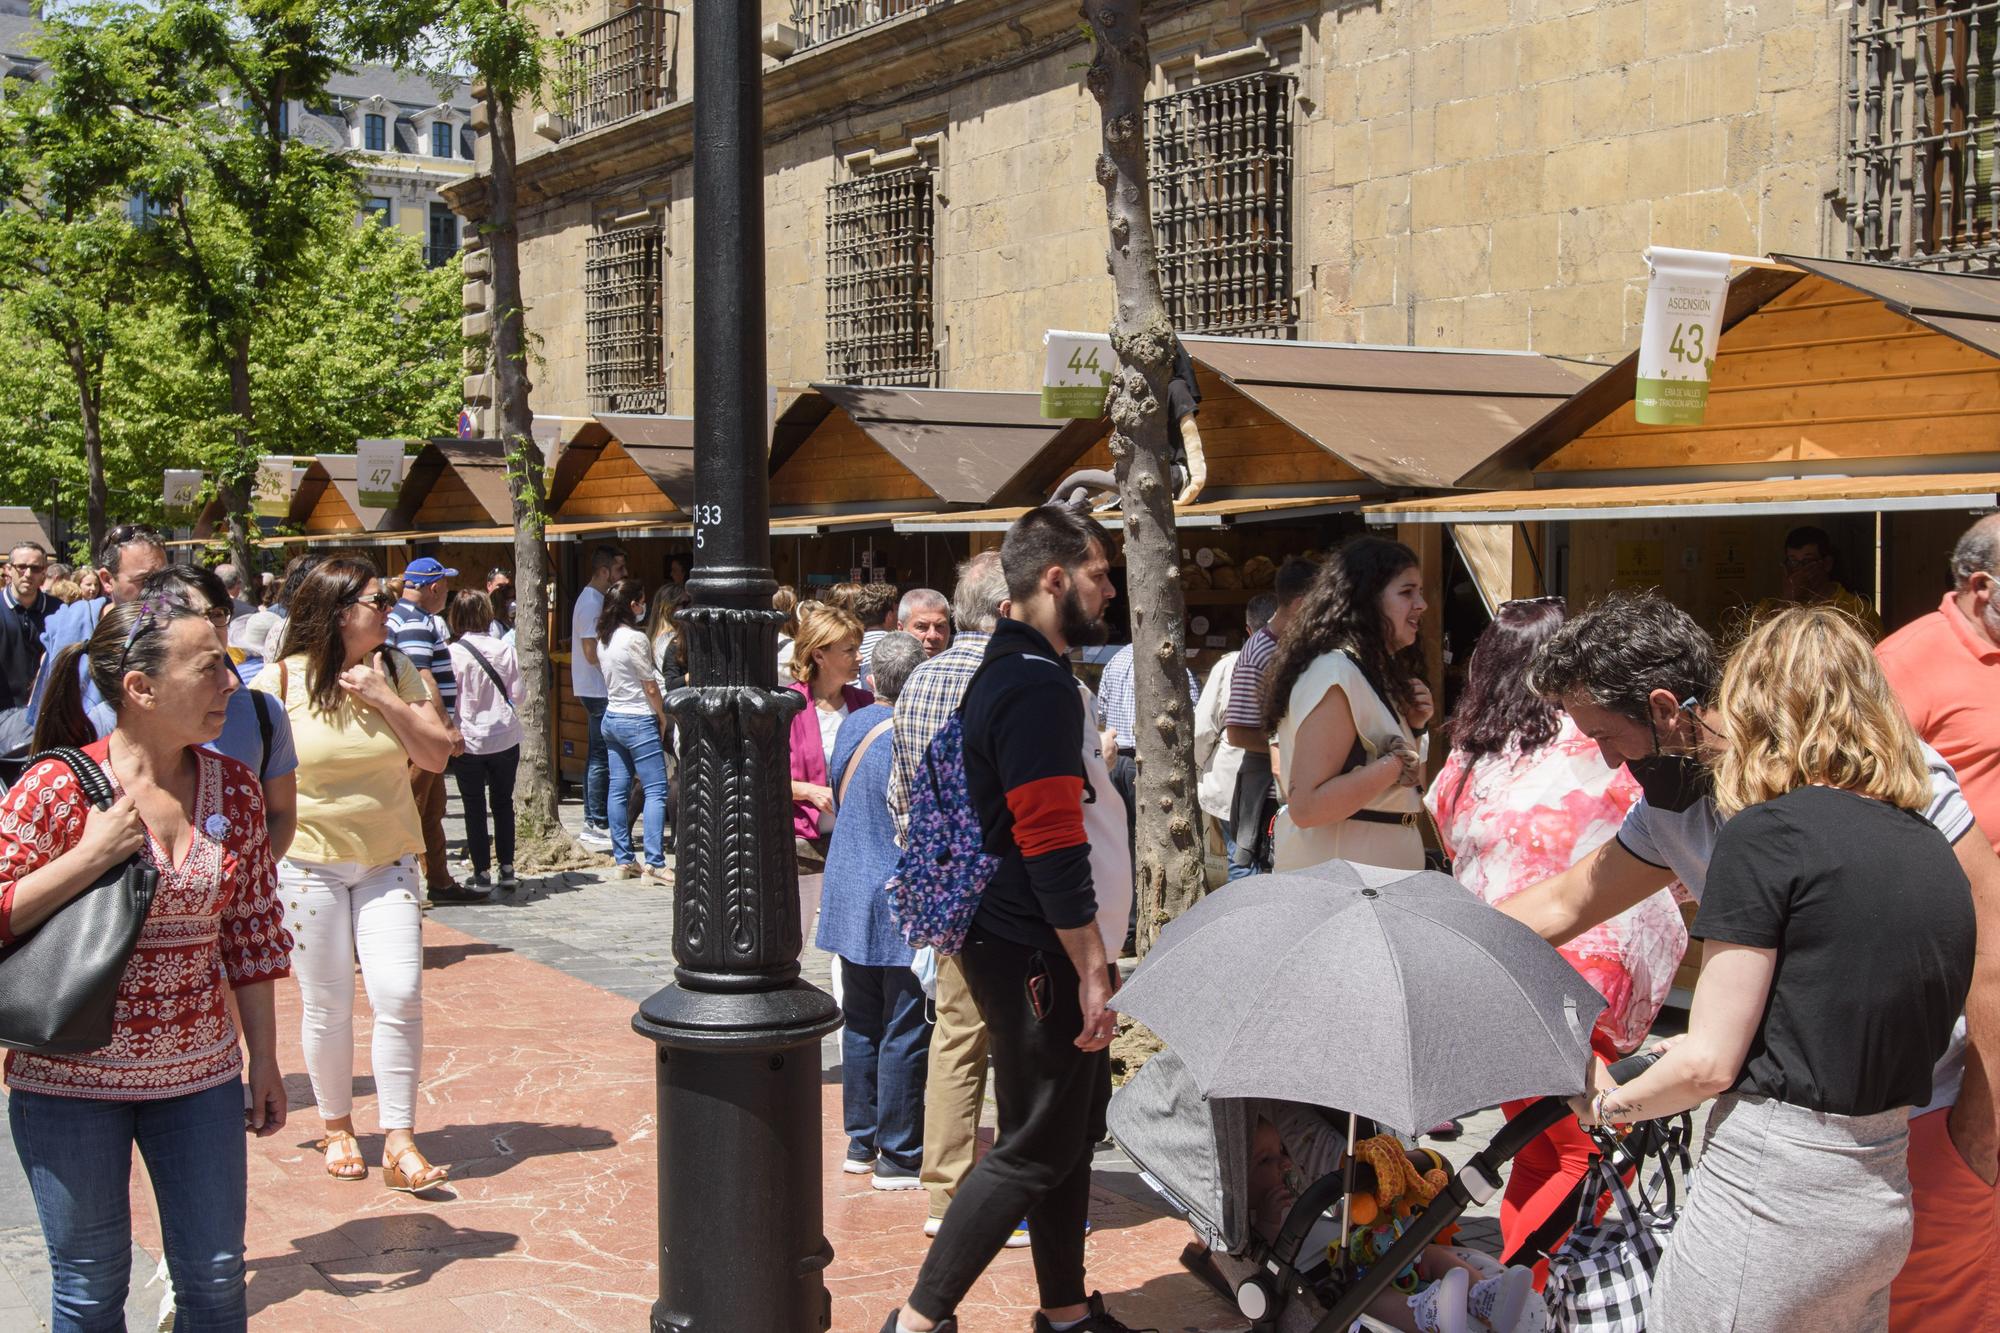 Galería de fotos: buen ambiente y sol en la celebración de la feria de la Ascensión en Oviedo